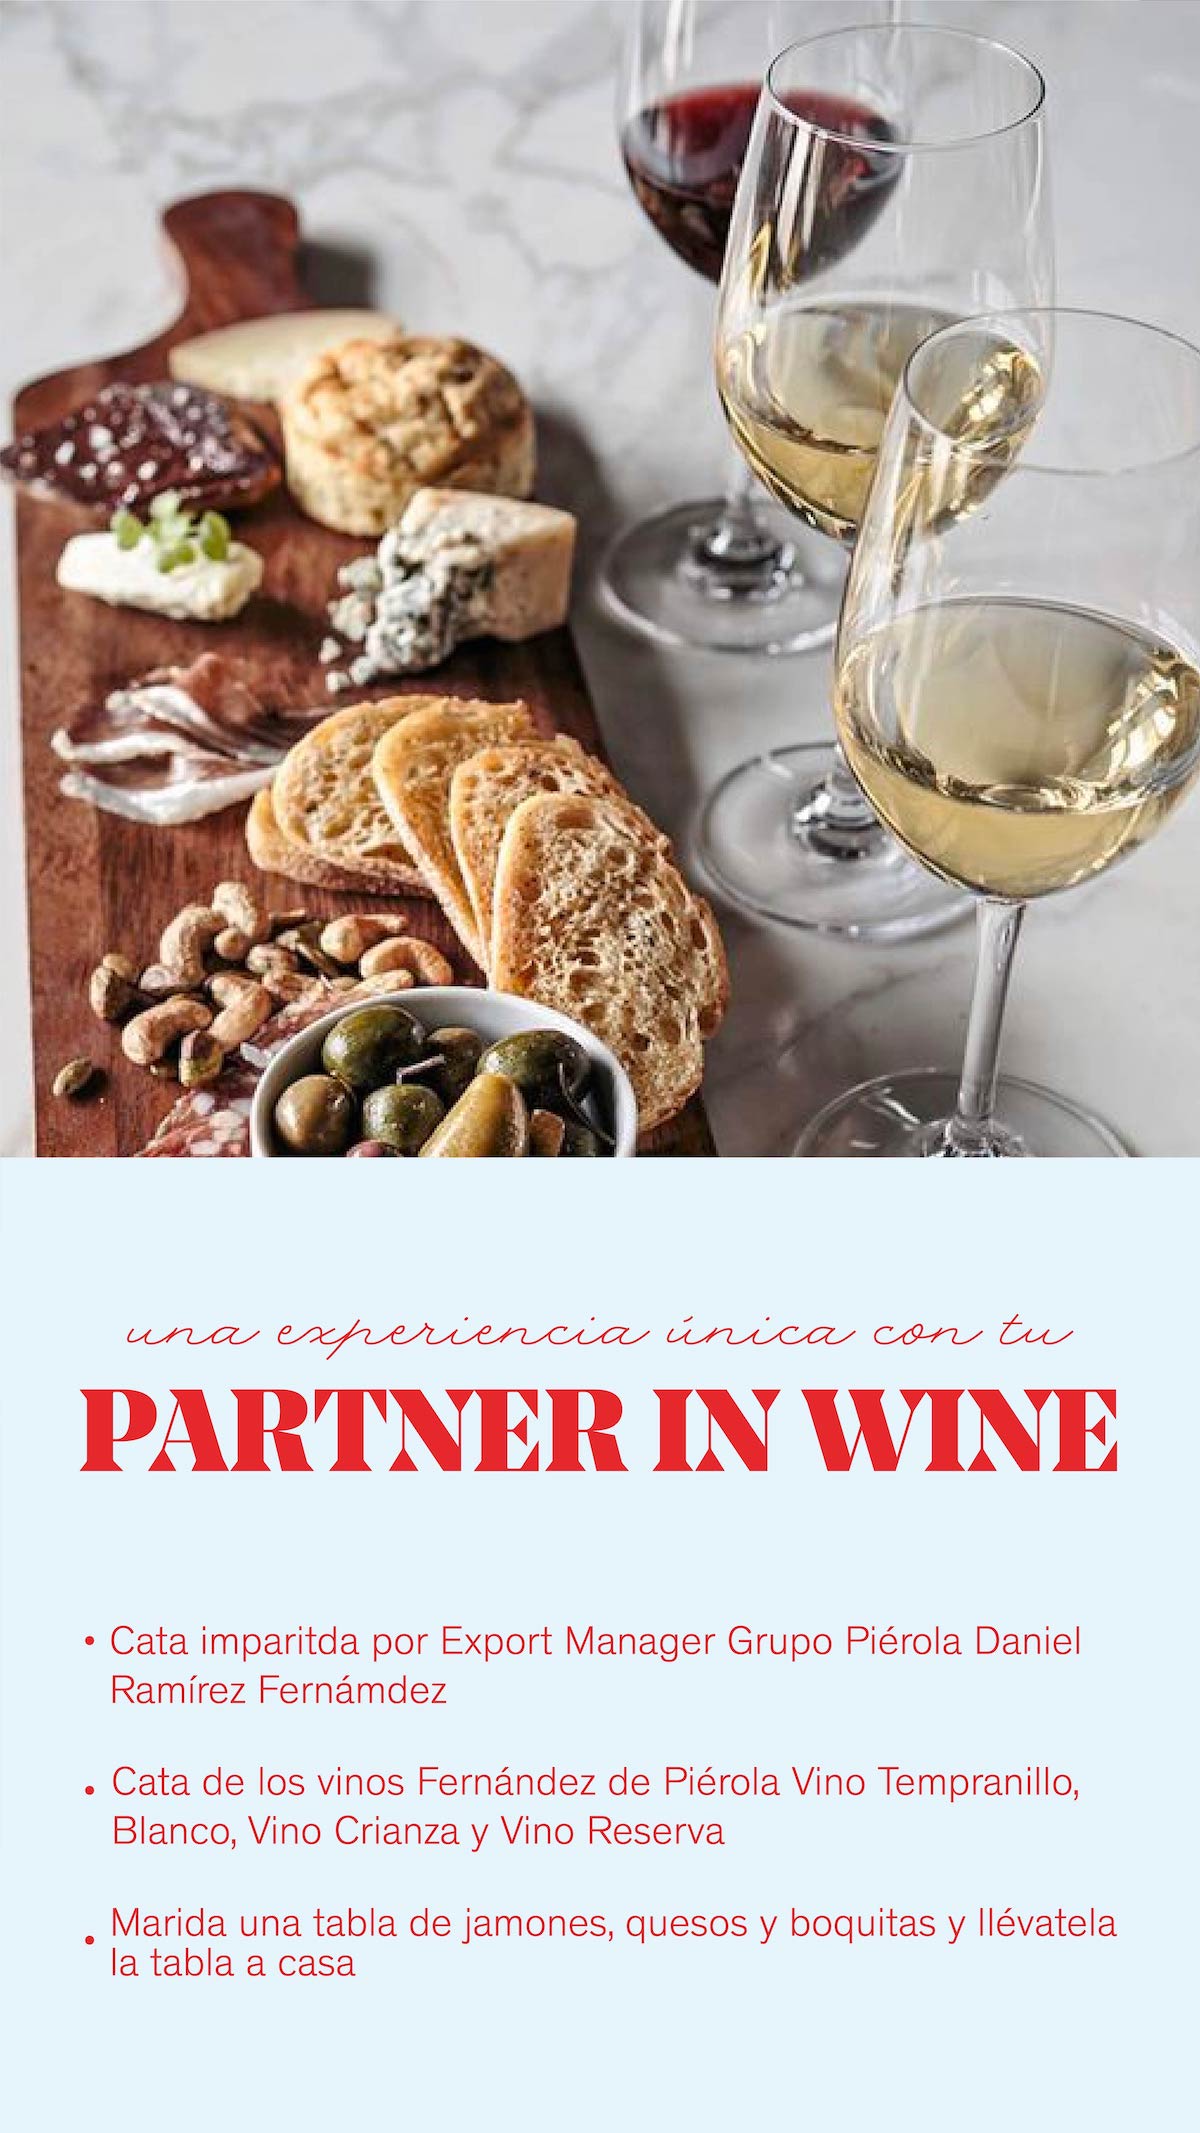 Cata de vinos Partner in wine